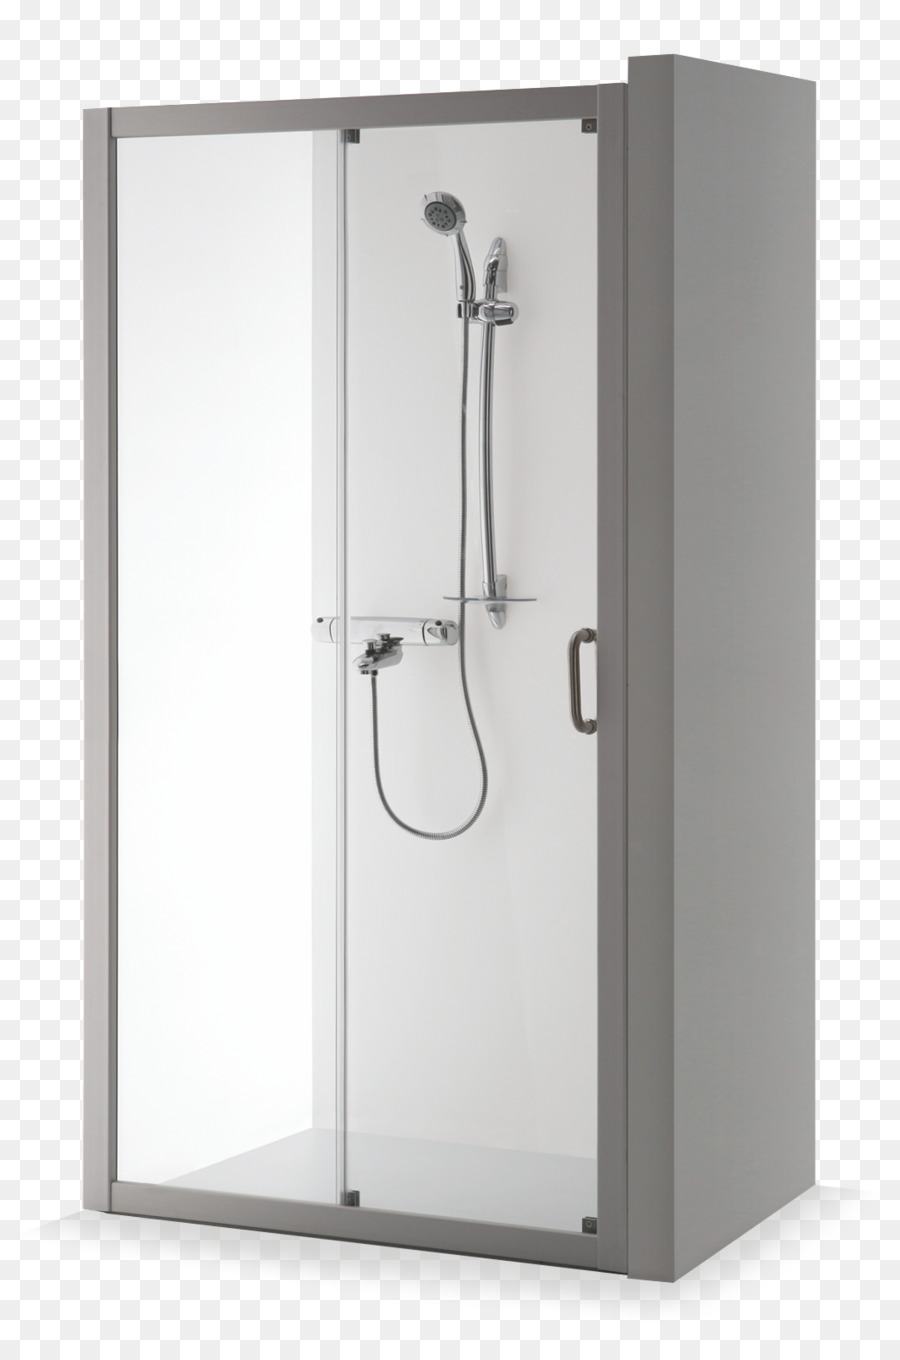 Shower Door Bathroom Wall - shower png download - 1064*1594 - Free Transparent Shower png Download.